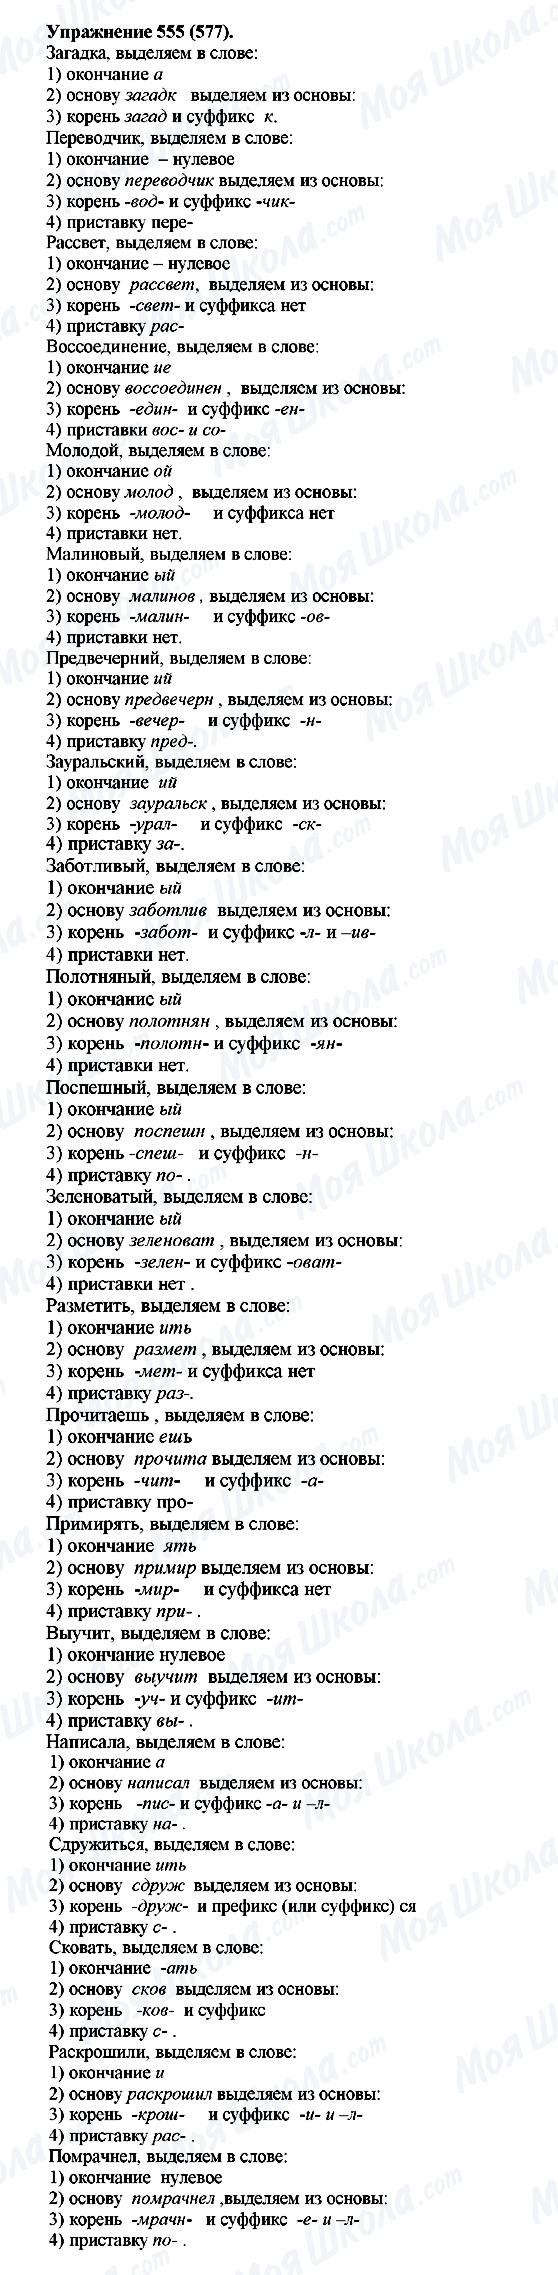 ГДЗ Русский язык 5 класс страница 555(577)